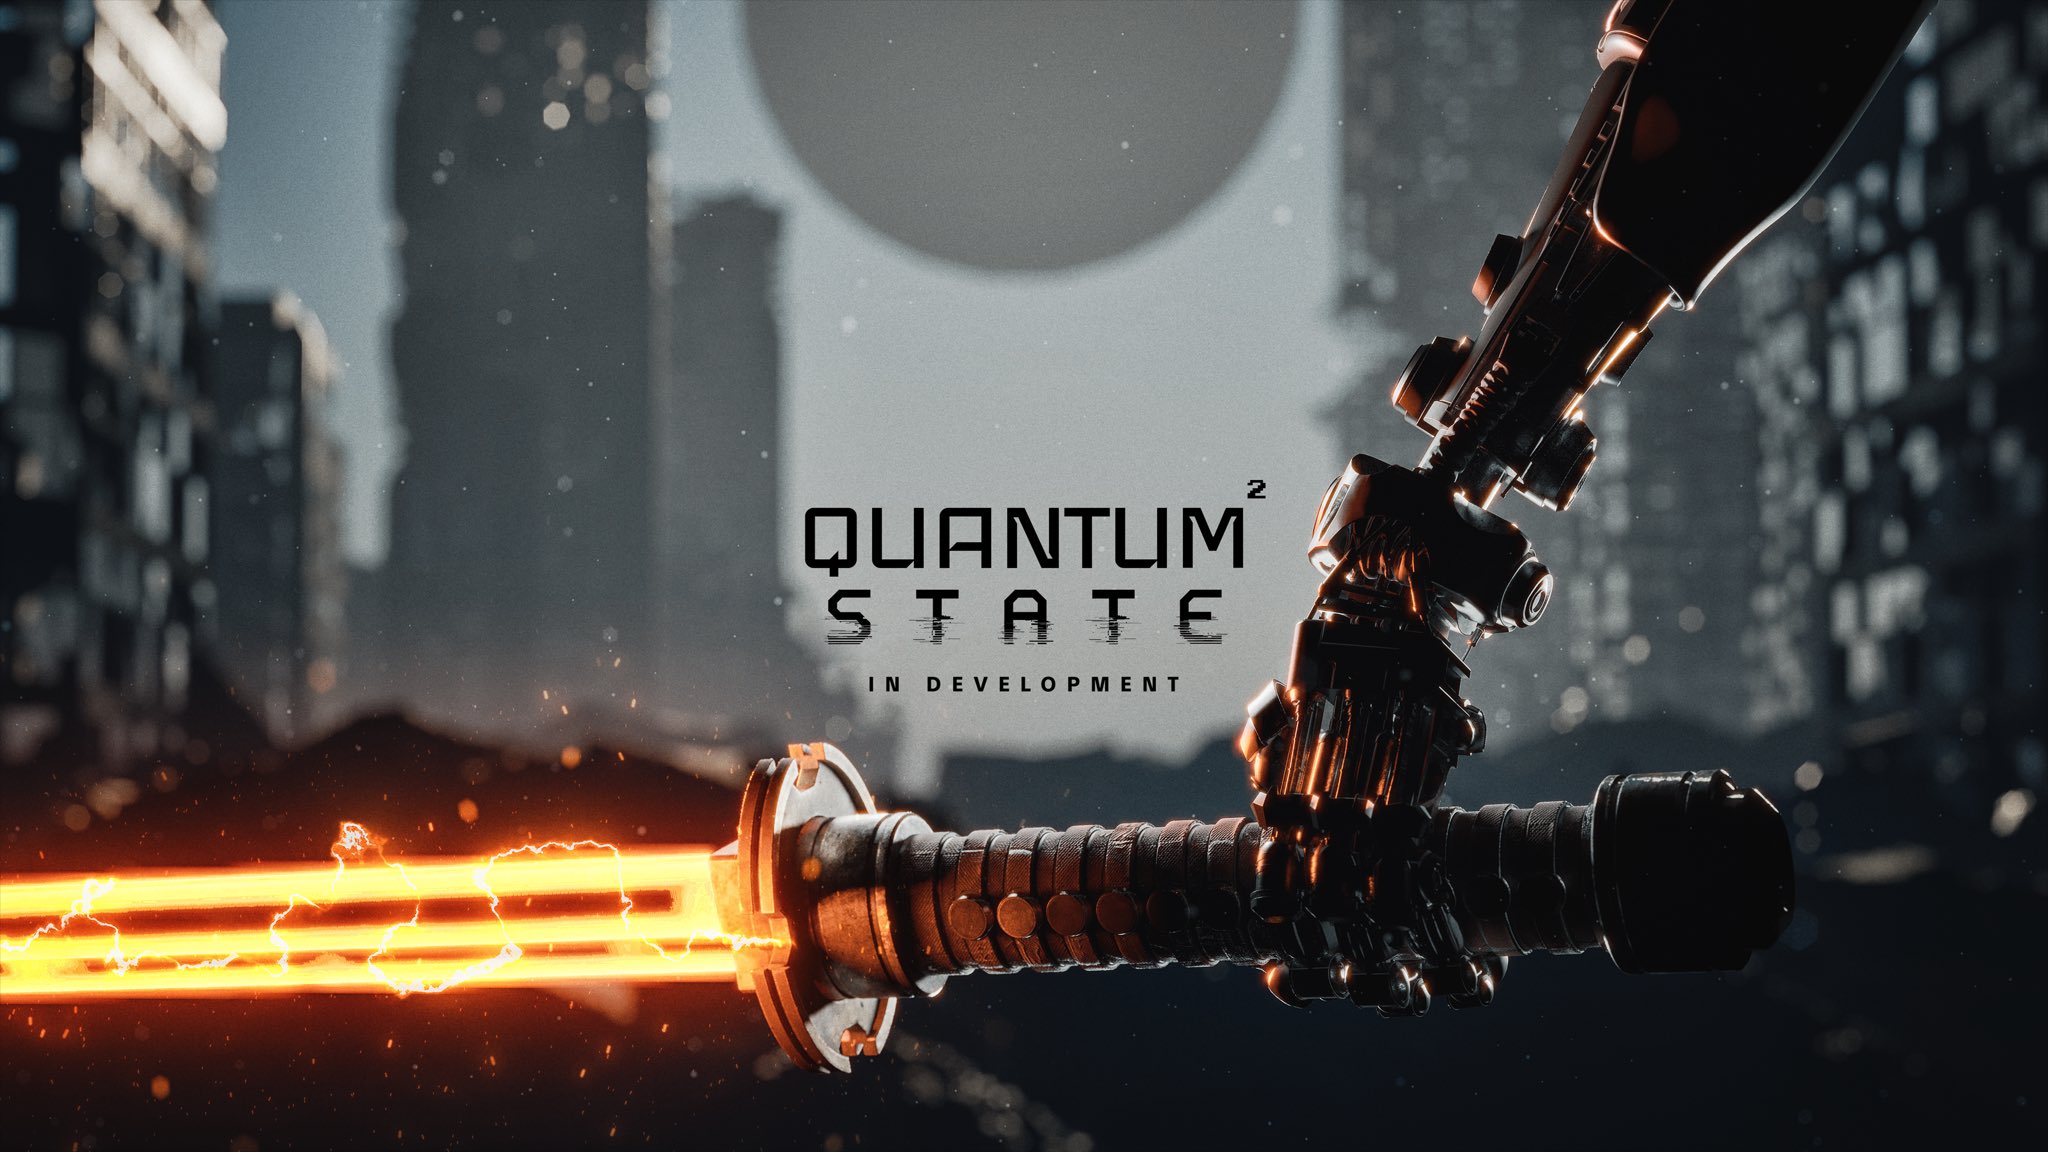 TeamKill Media kündigt Quantum State an, die Fortsetzung von Quantum Error